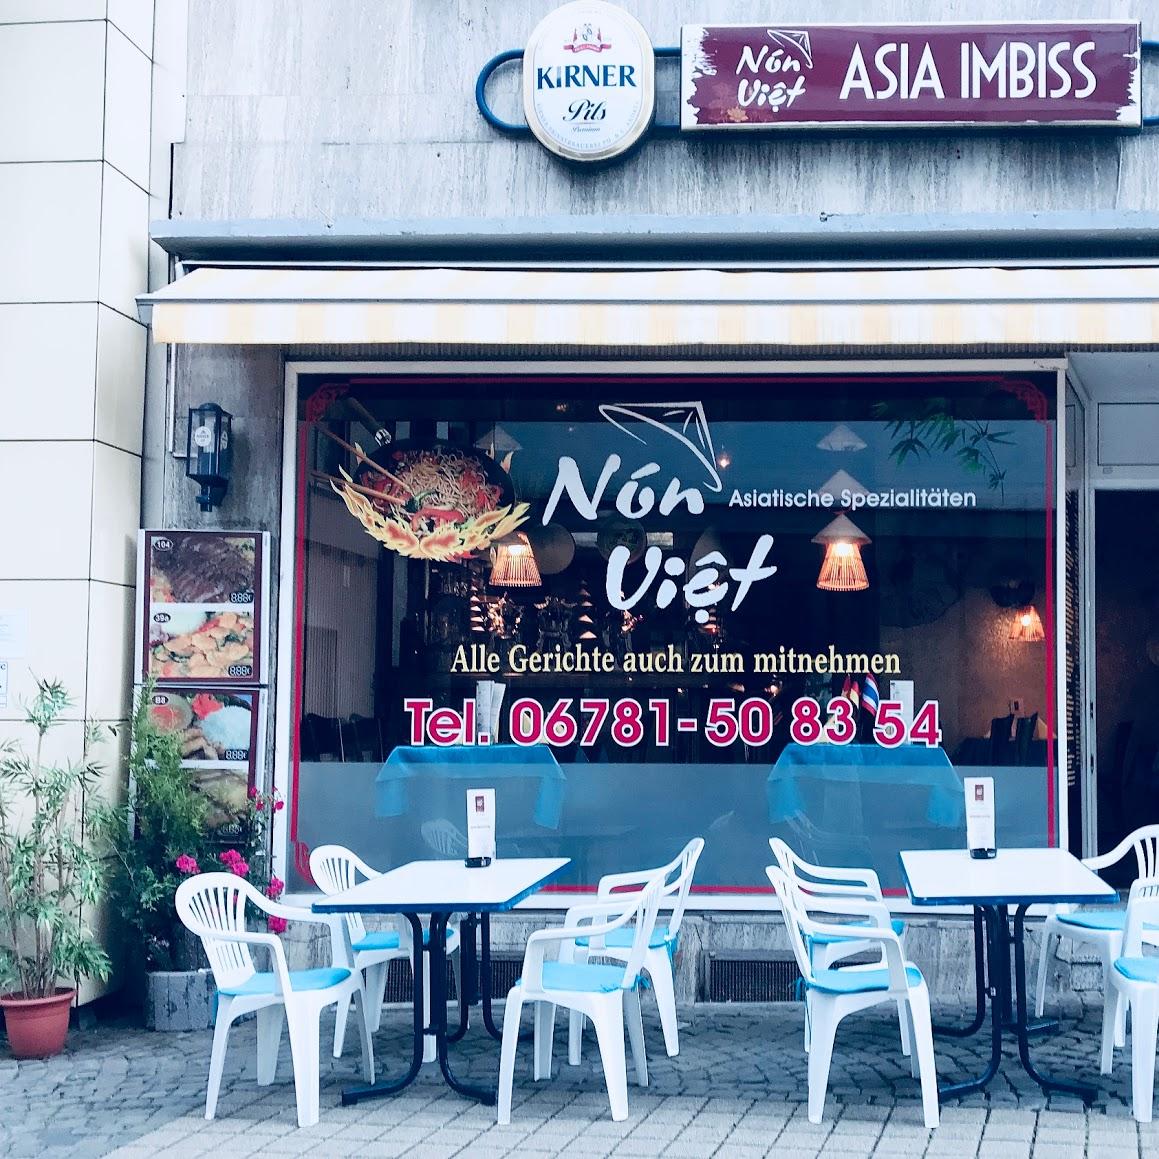 Restaurant "Asia Imbiss Non Viet" in  Idar-Oberstein